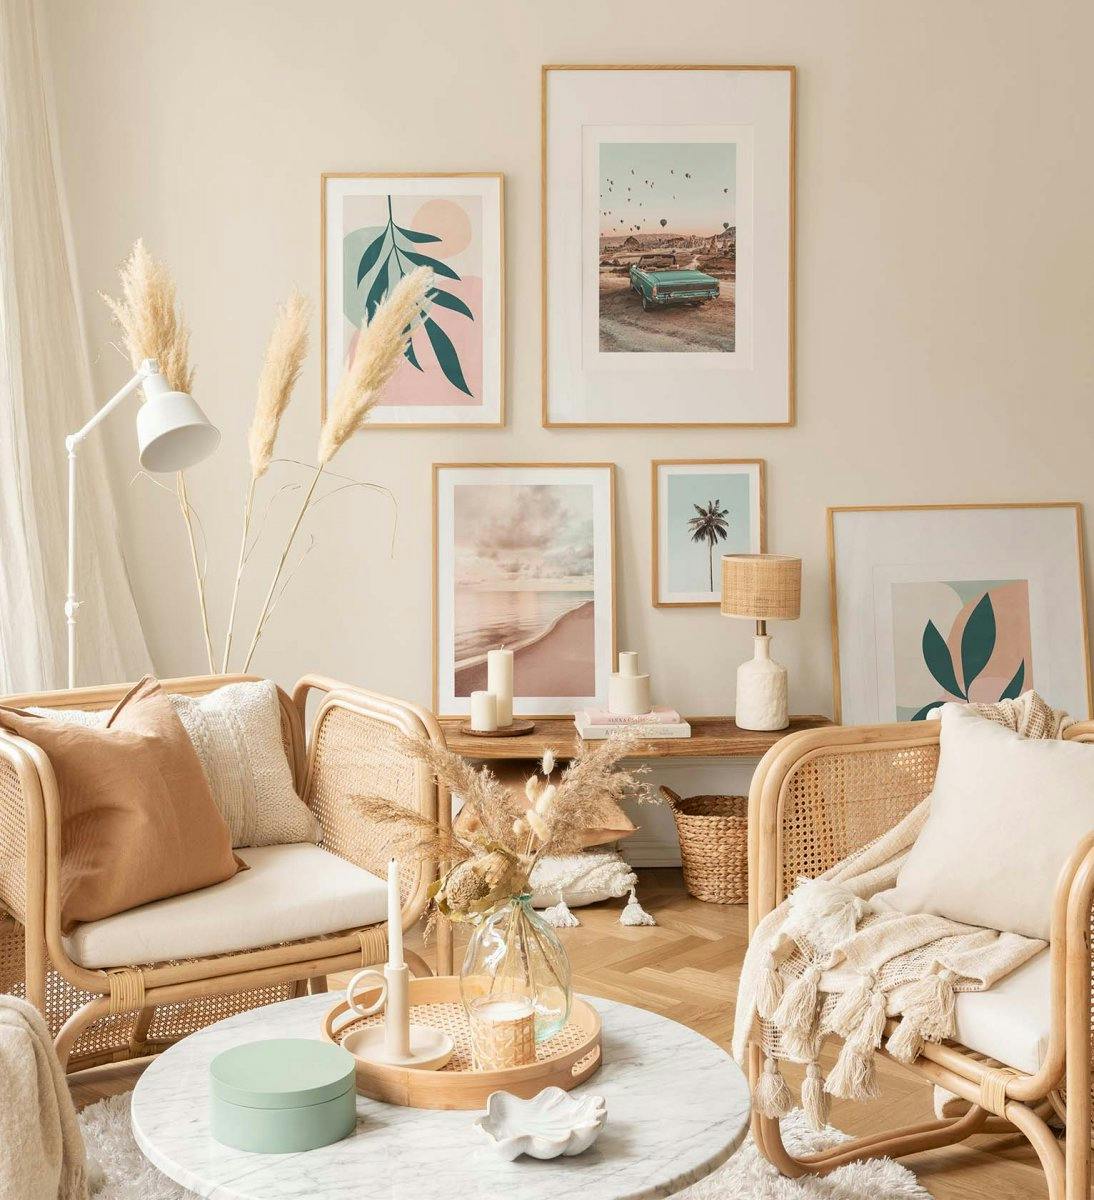 Galerie foto grafică de perete în culori pastelate combinată cu fotografii din natură pentru biroul de acasă